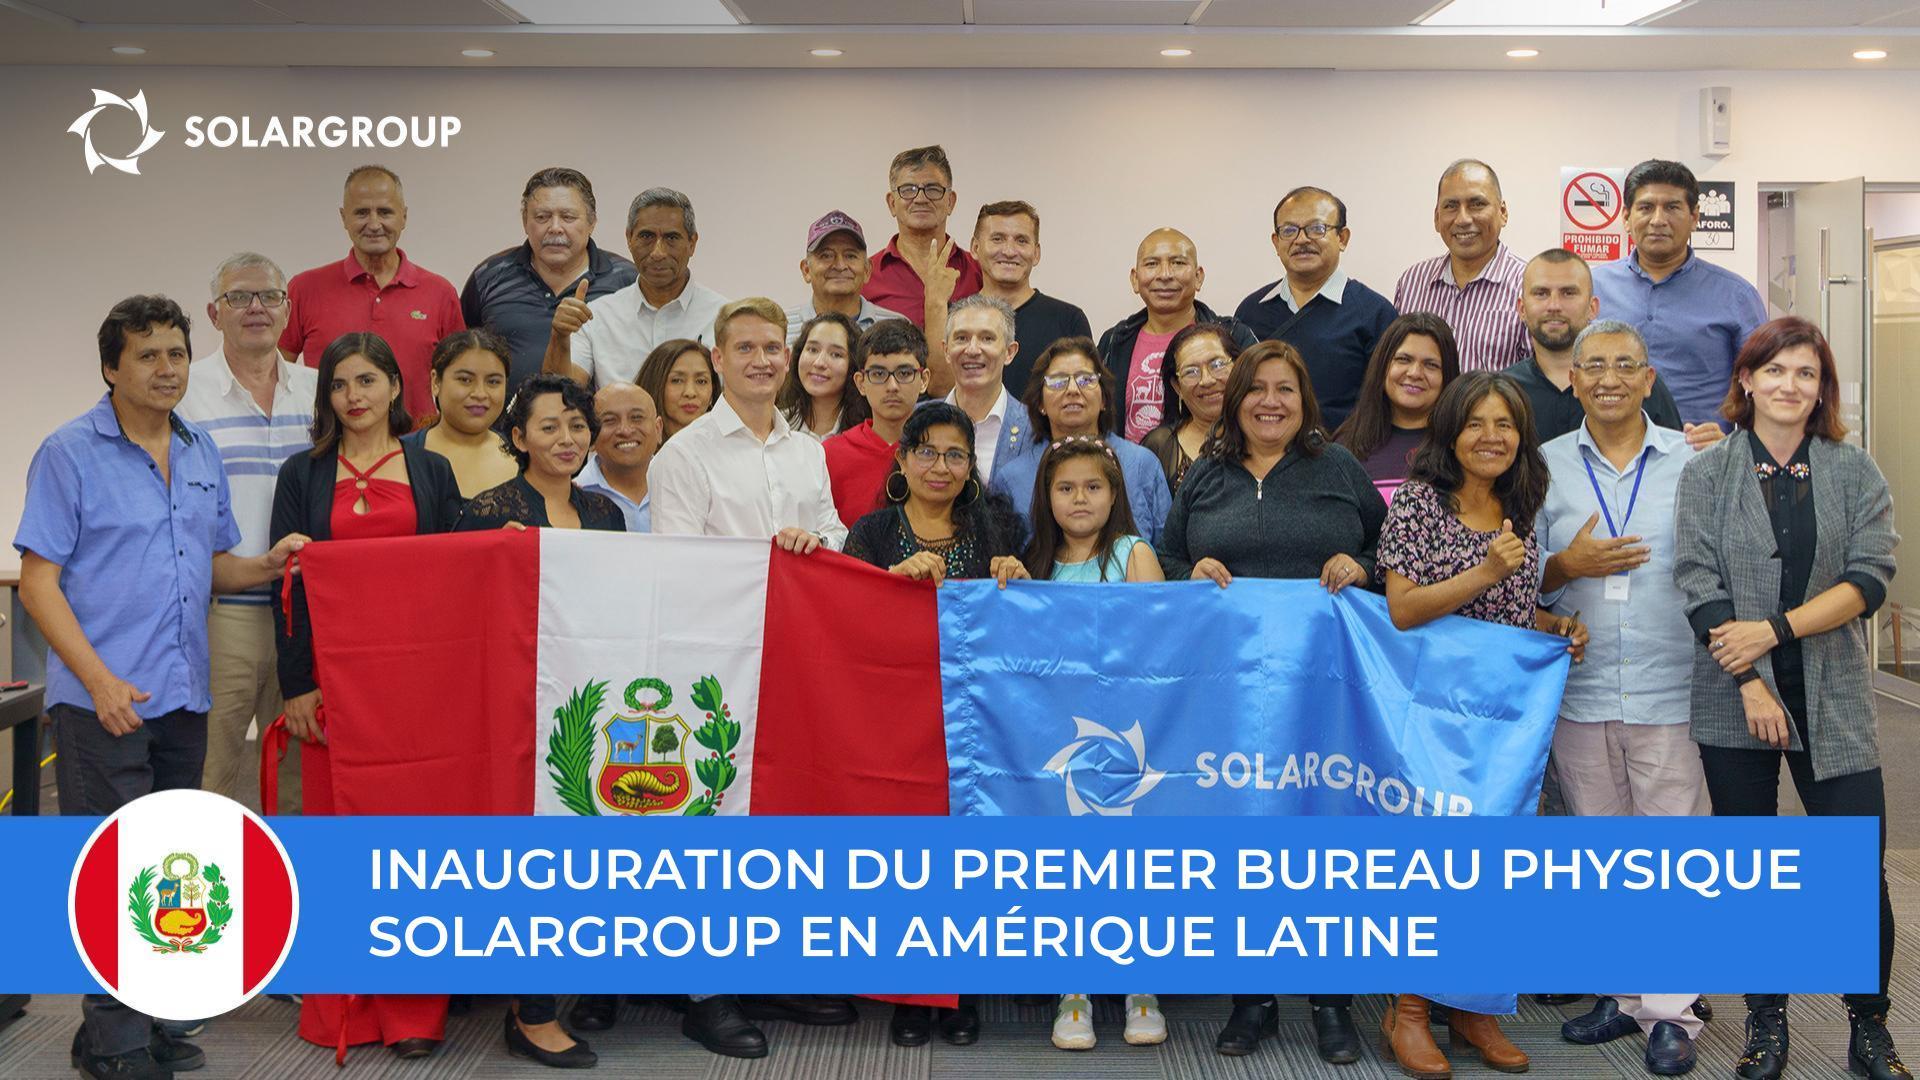 Nouvelle étape pour le développement du projet en Amérique latine : SOLARGROUP a inauguré son bureau physique au Pérou